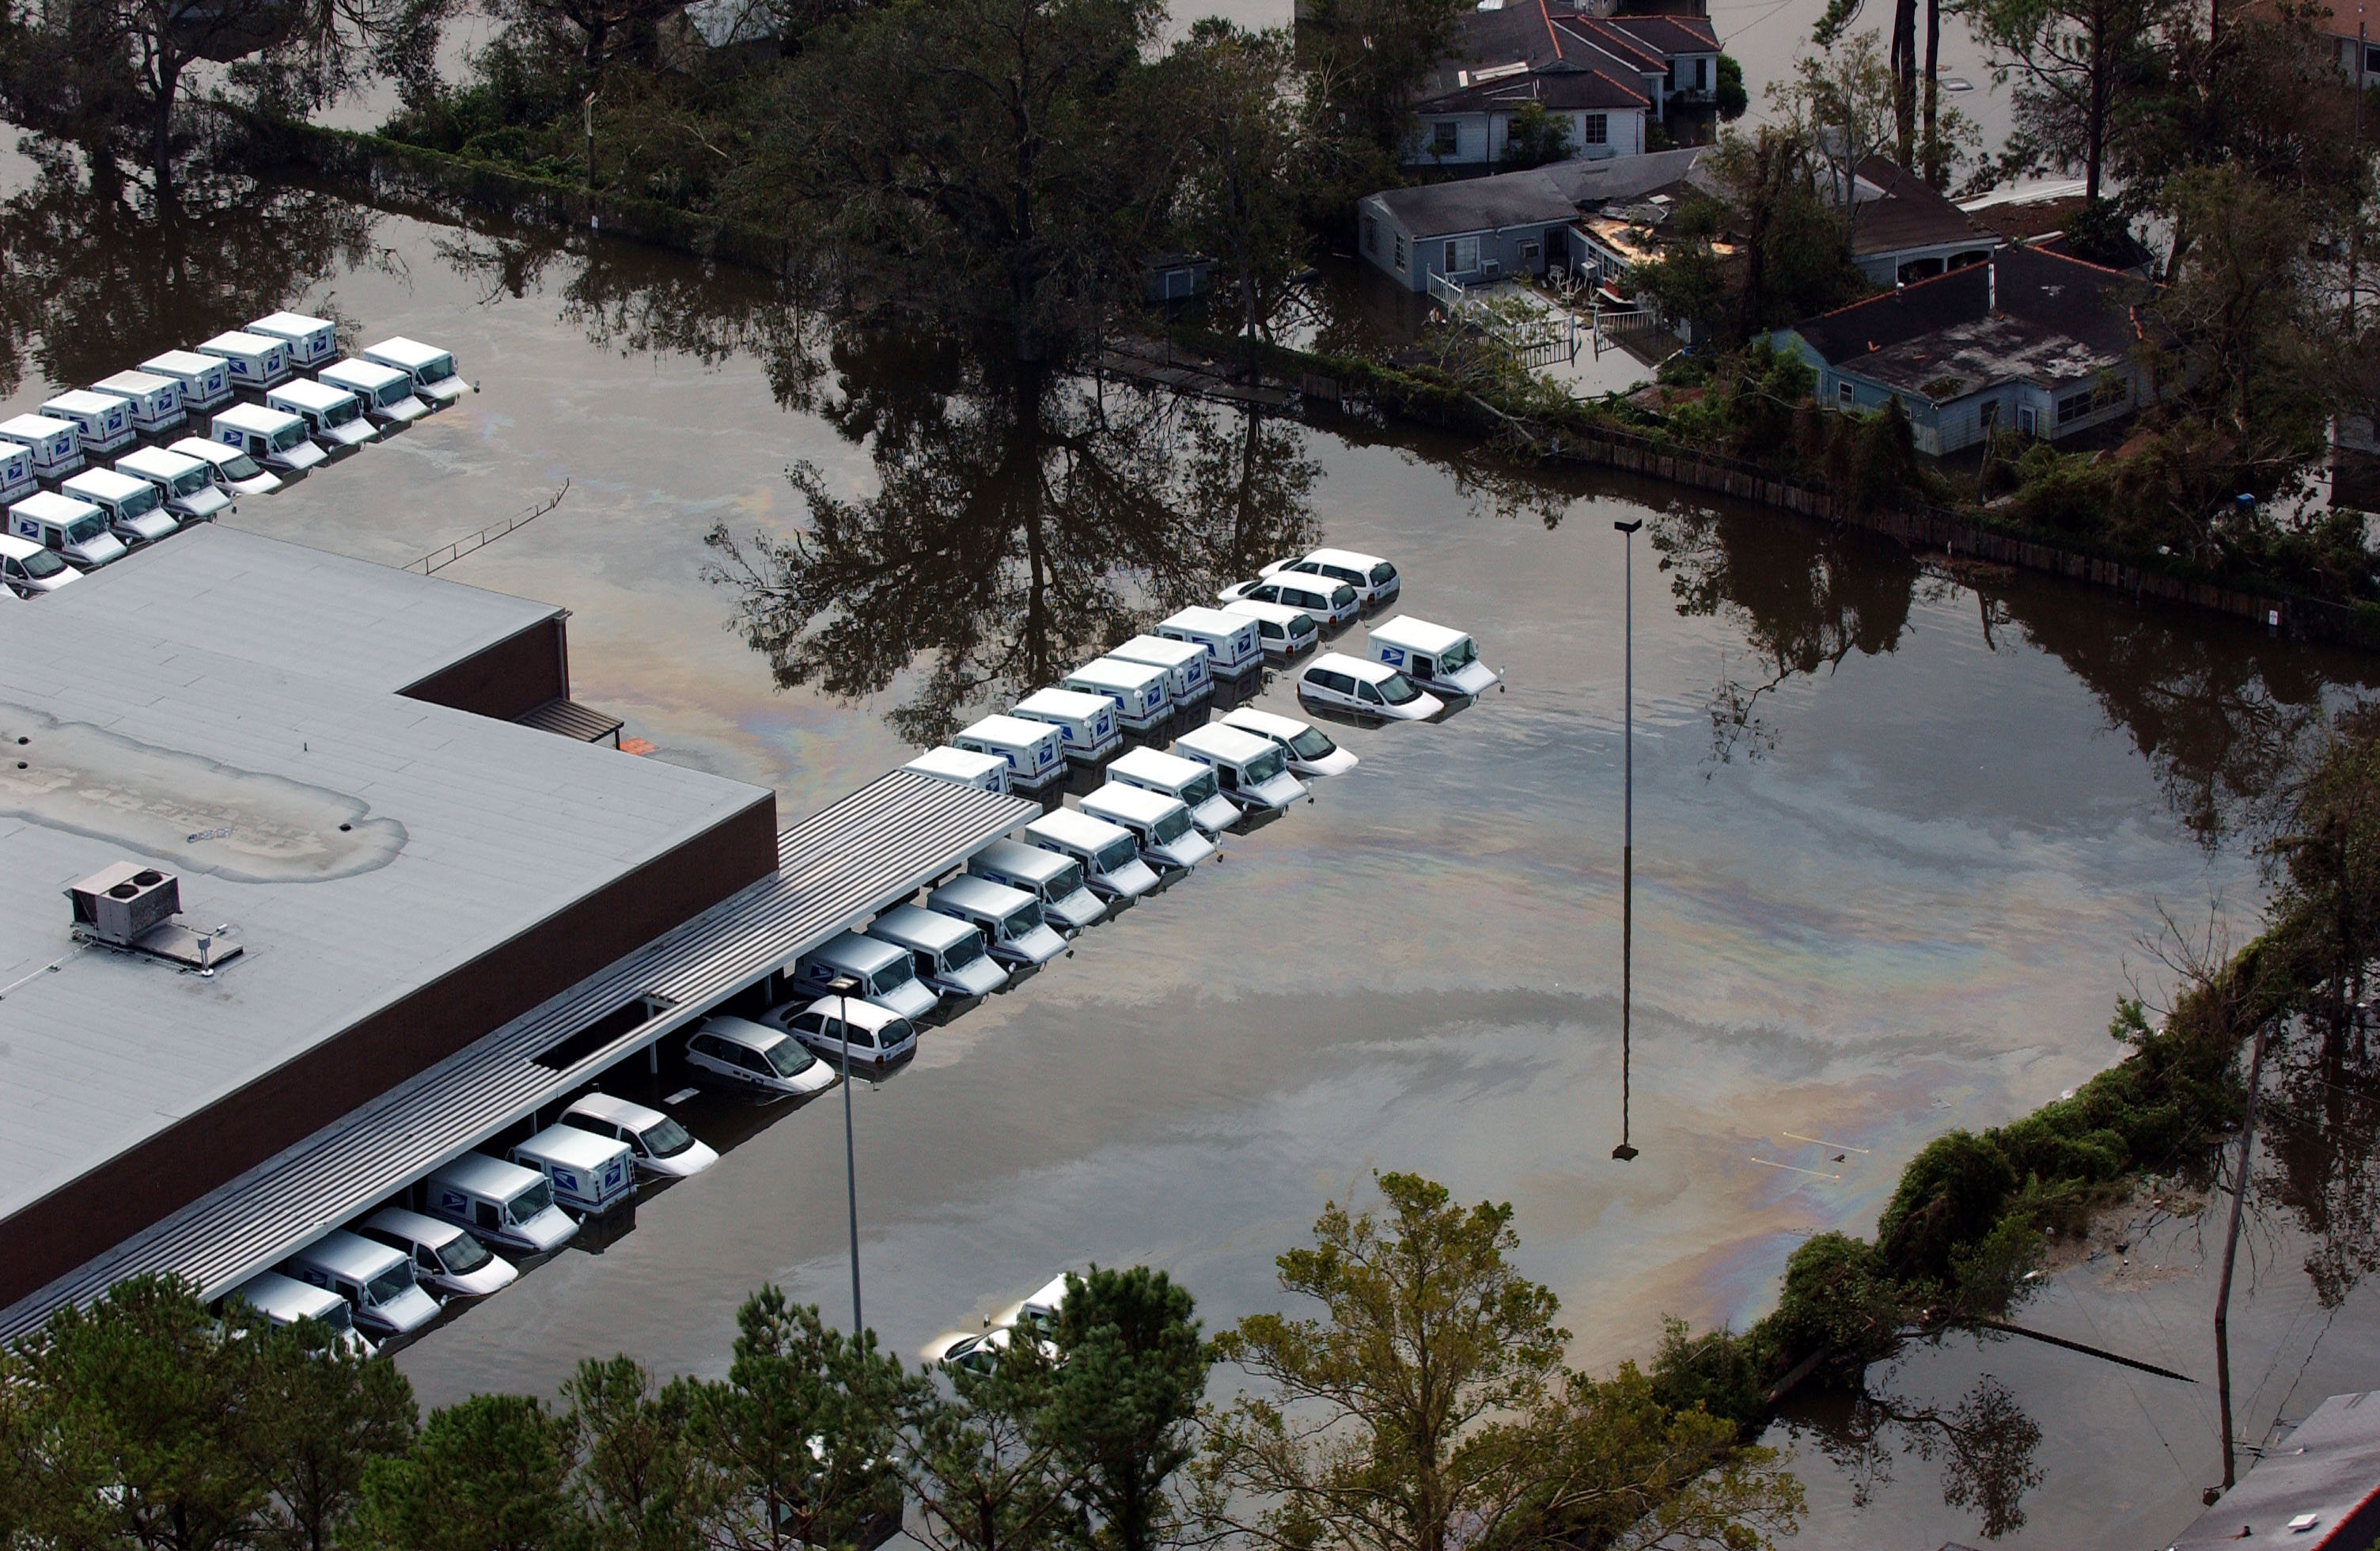 FEMA - 14981 - Photograph by Jocelyn Augustino taken on 08-30-2005 in Louisiana